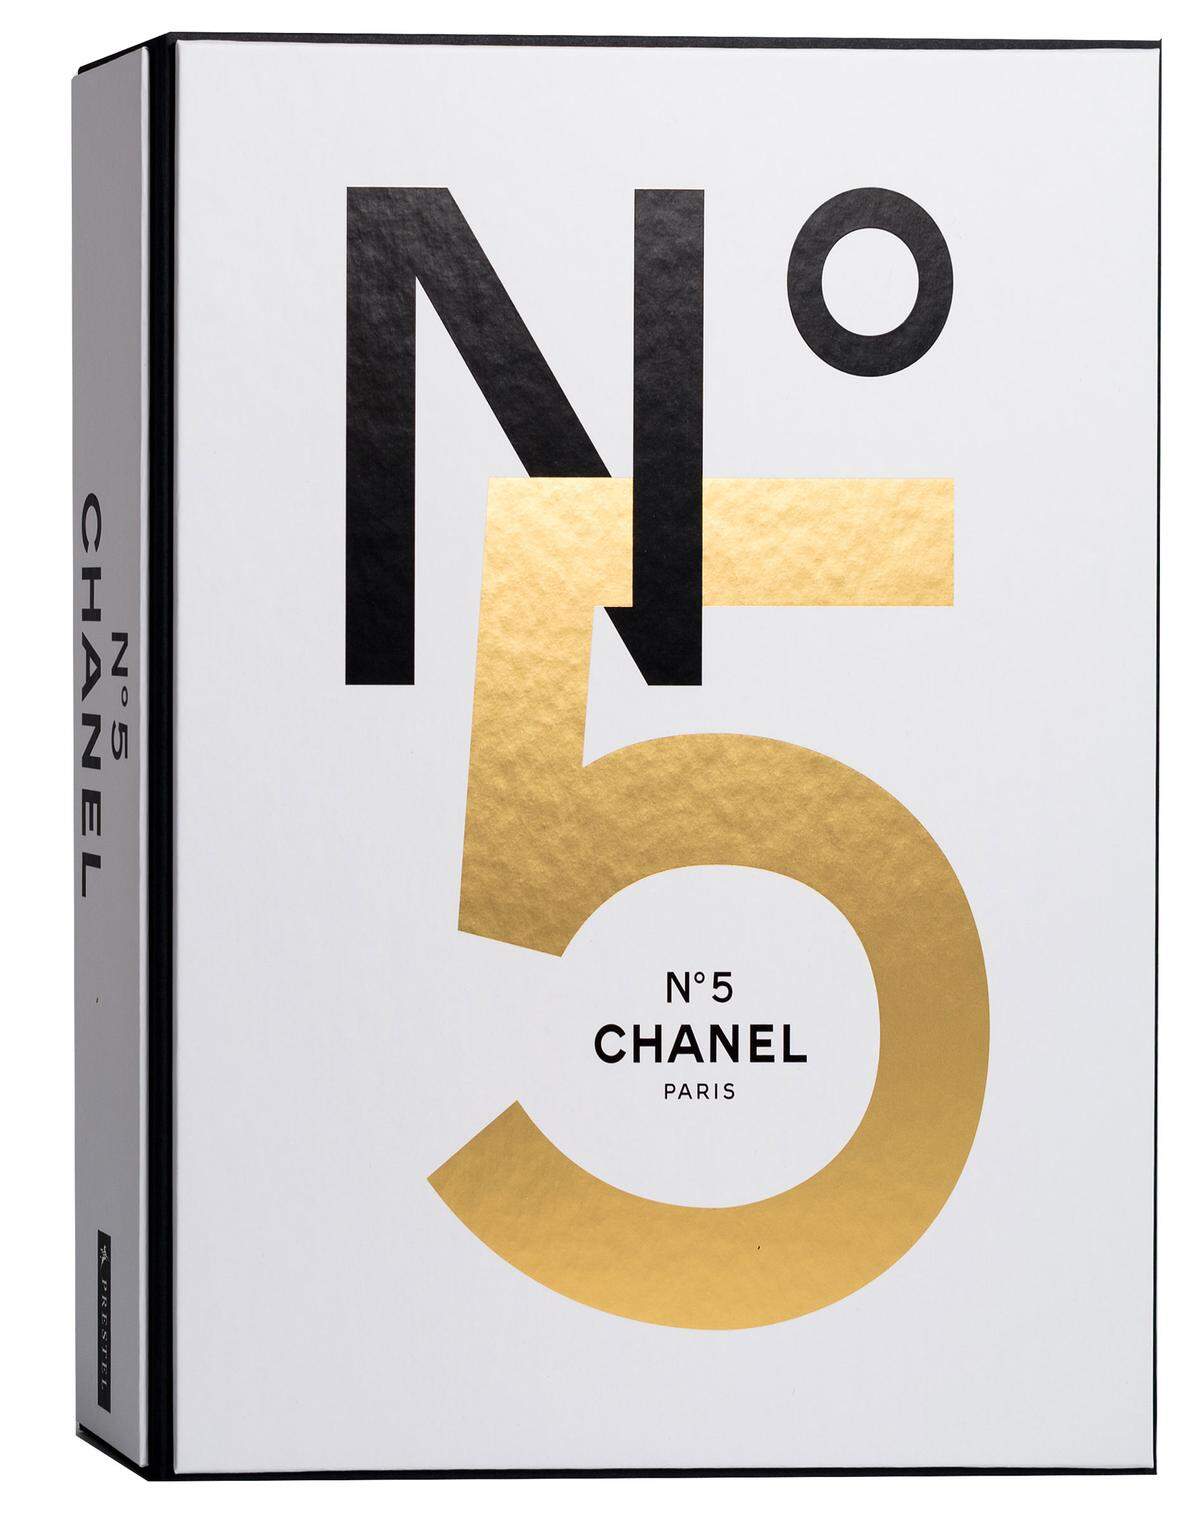 Das ist nur eine von zahlreichen Anekdoten in einem neu erschienenen Doppel-Prachtband zum Jubiläum, der Parfumliebhaber begeistern dürfte. „Chanel N° 5“, Kassette mit zwei Bänden, Prestel.